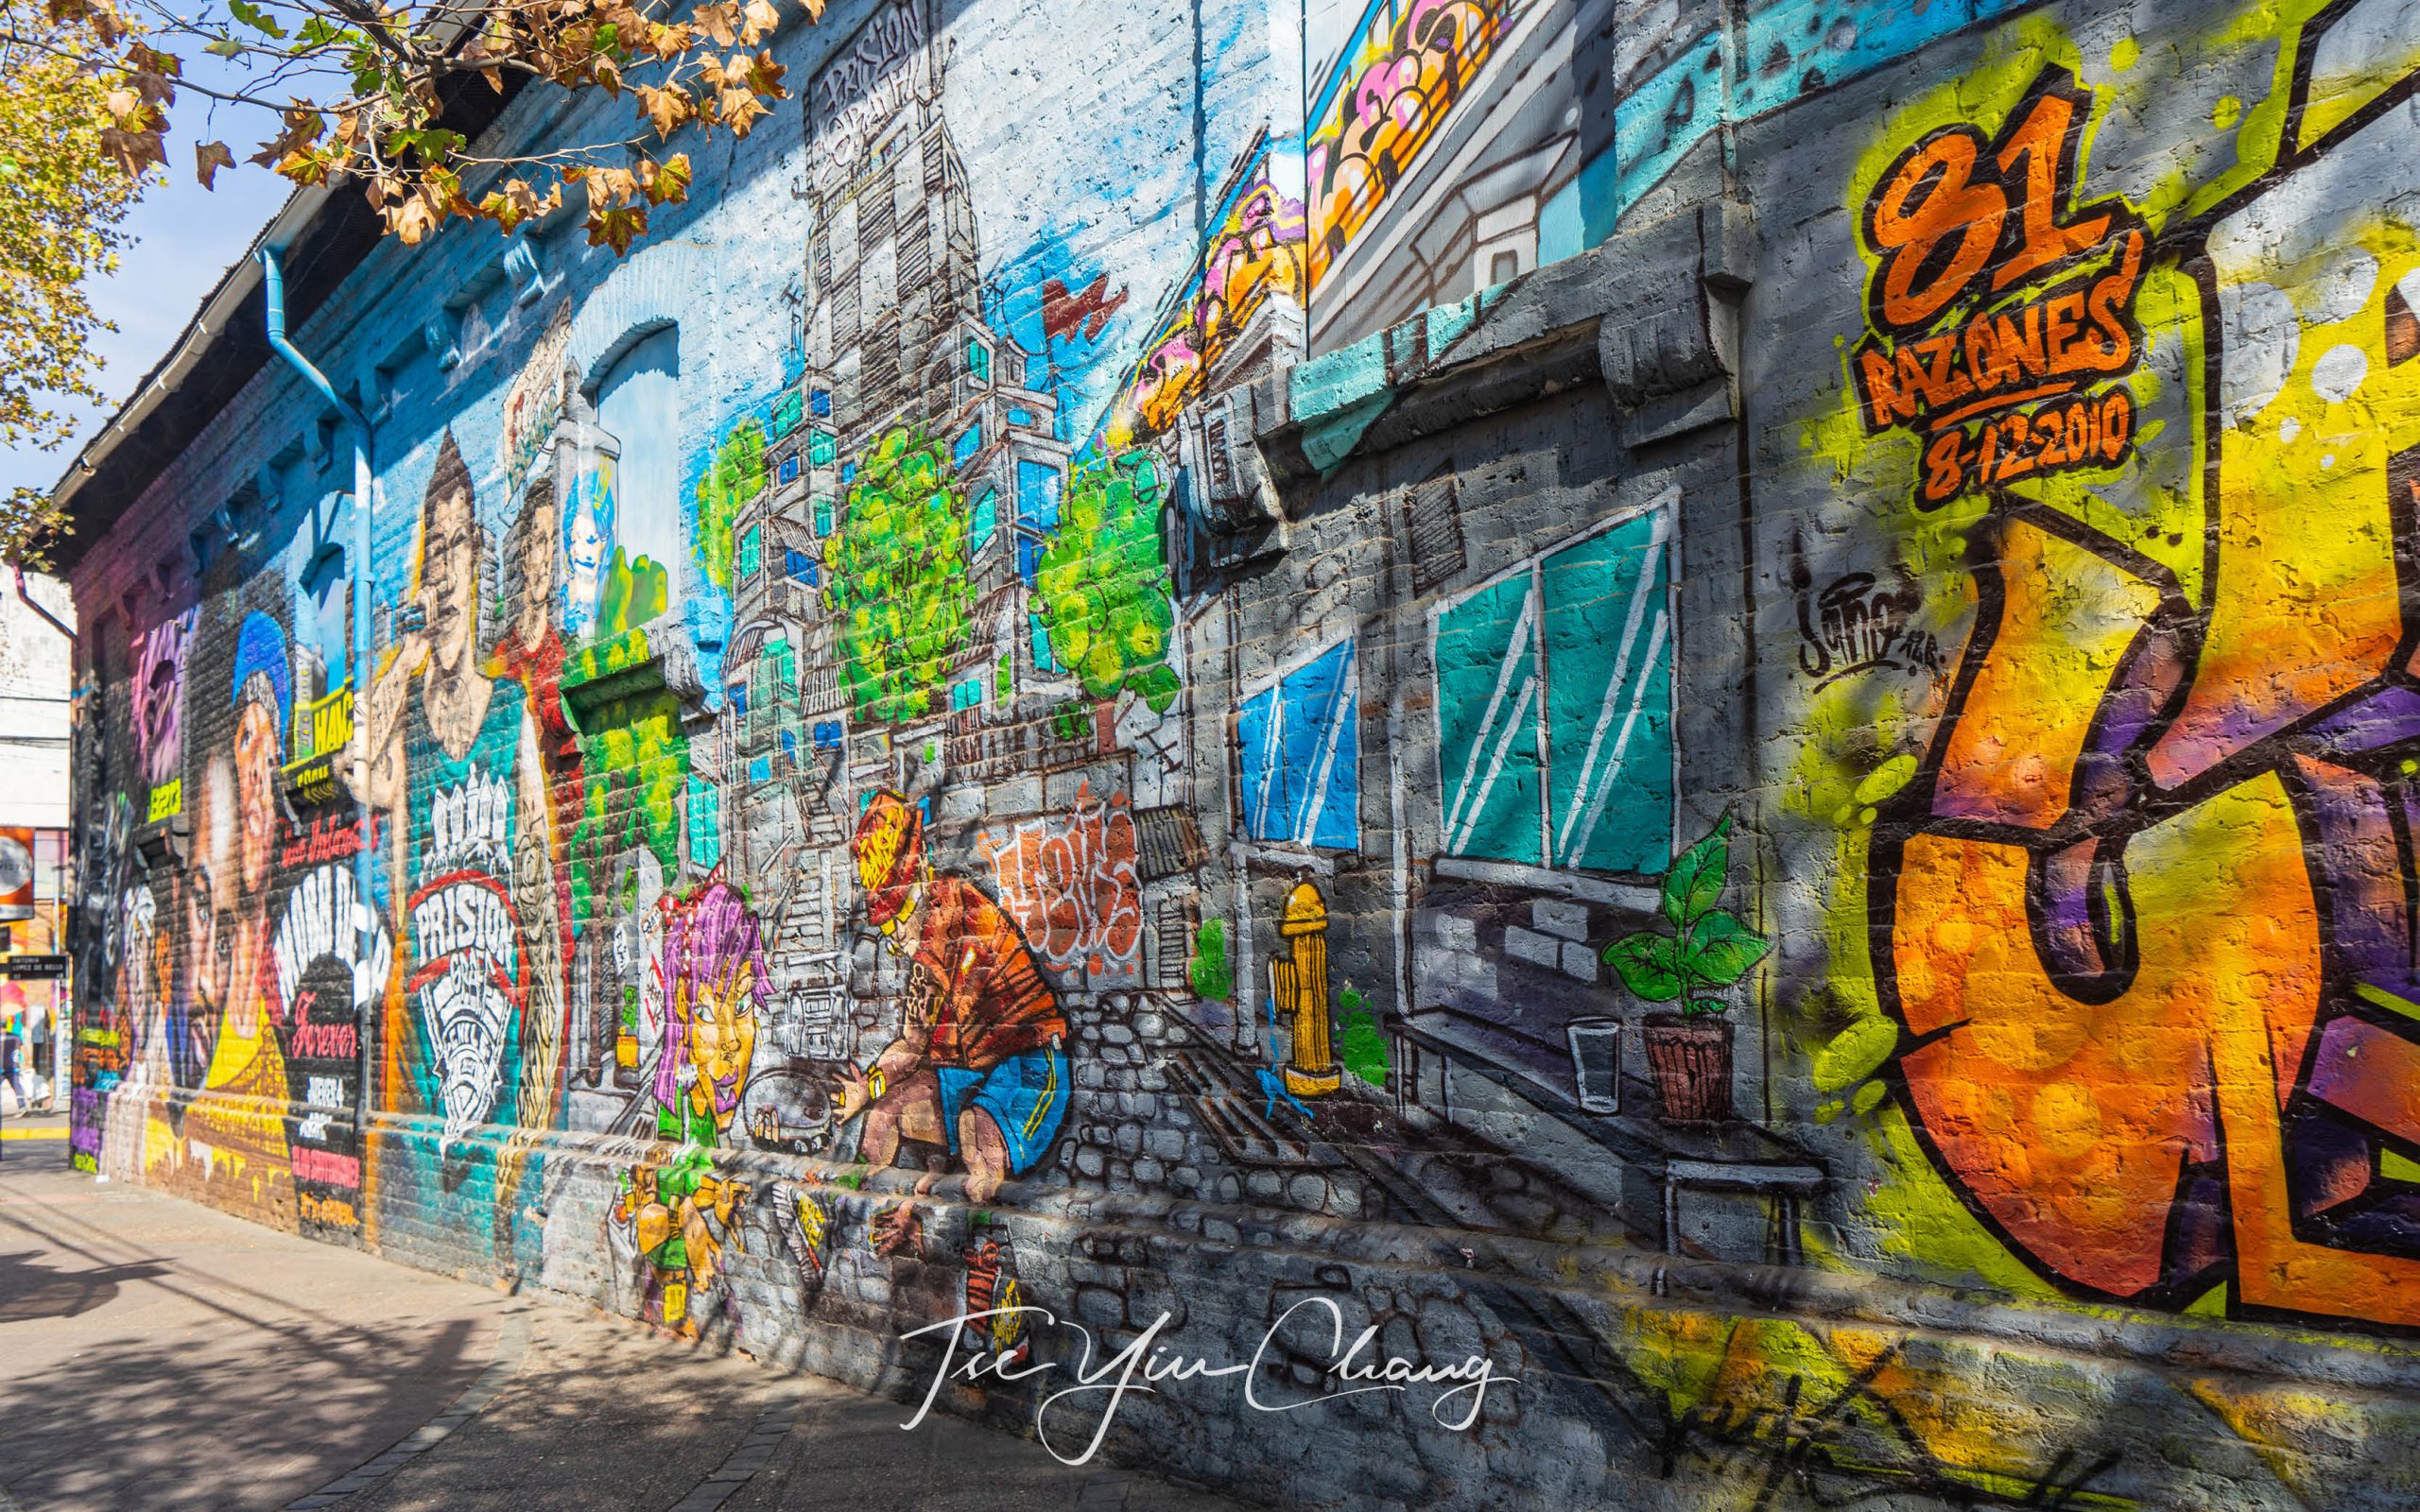 Elaborate street art adorns many of Bellavista’s walls